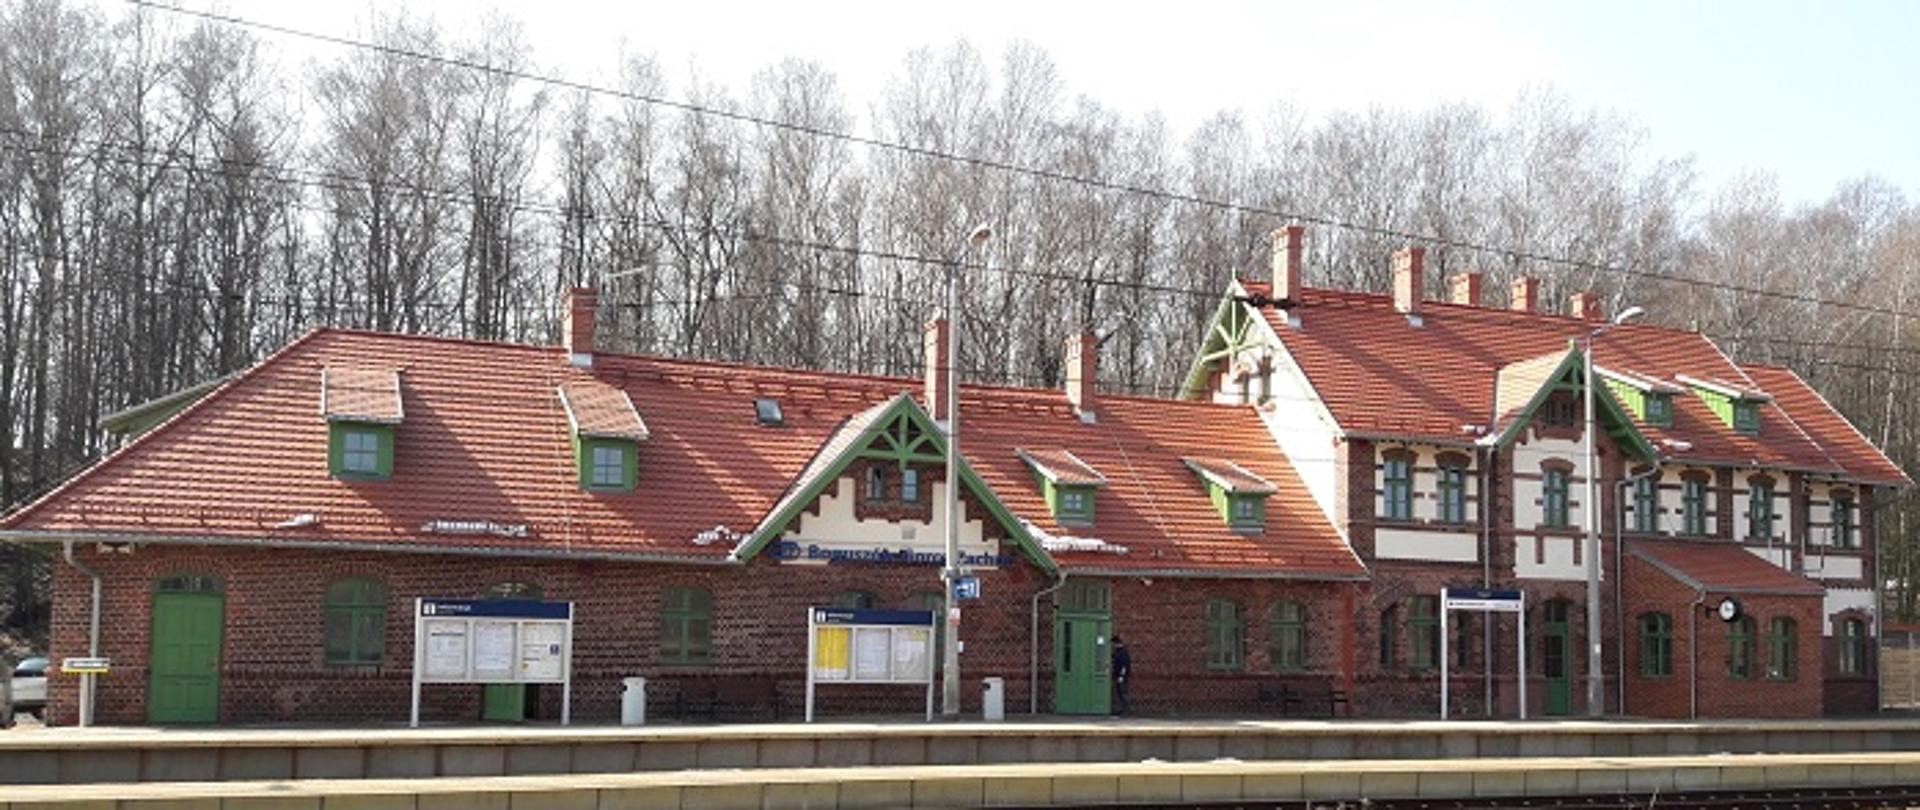 Zdjęcie przedstawia dworzec kolejowy w Boguszowie Gorcach, nowy obiekt oddany do użytku pasażerów, jest zbudowany z czerwonej cegły, ma czerwony dach, zielone drzwi i okiennice.